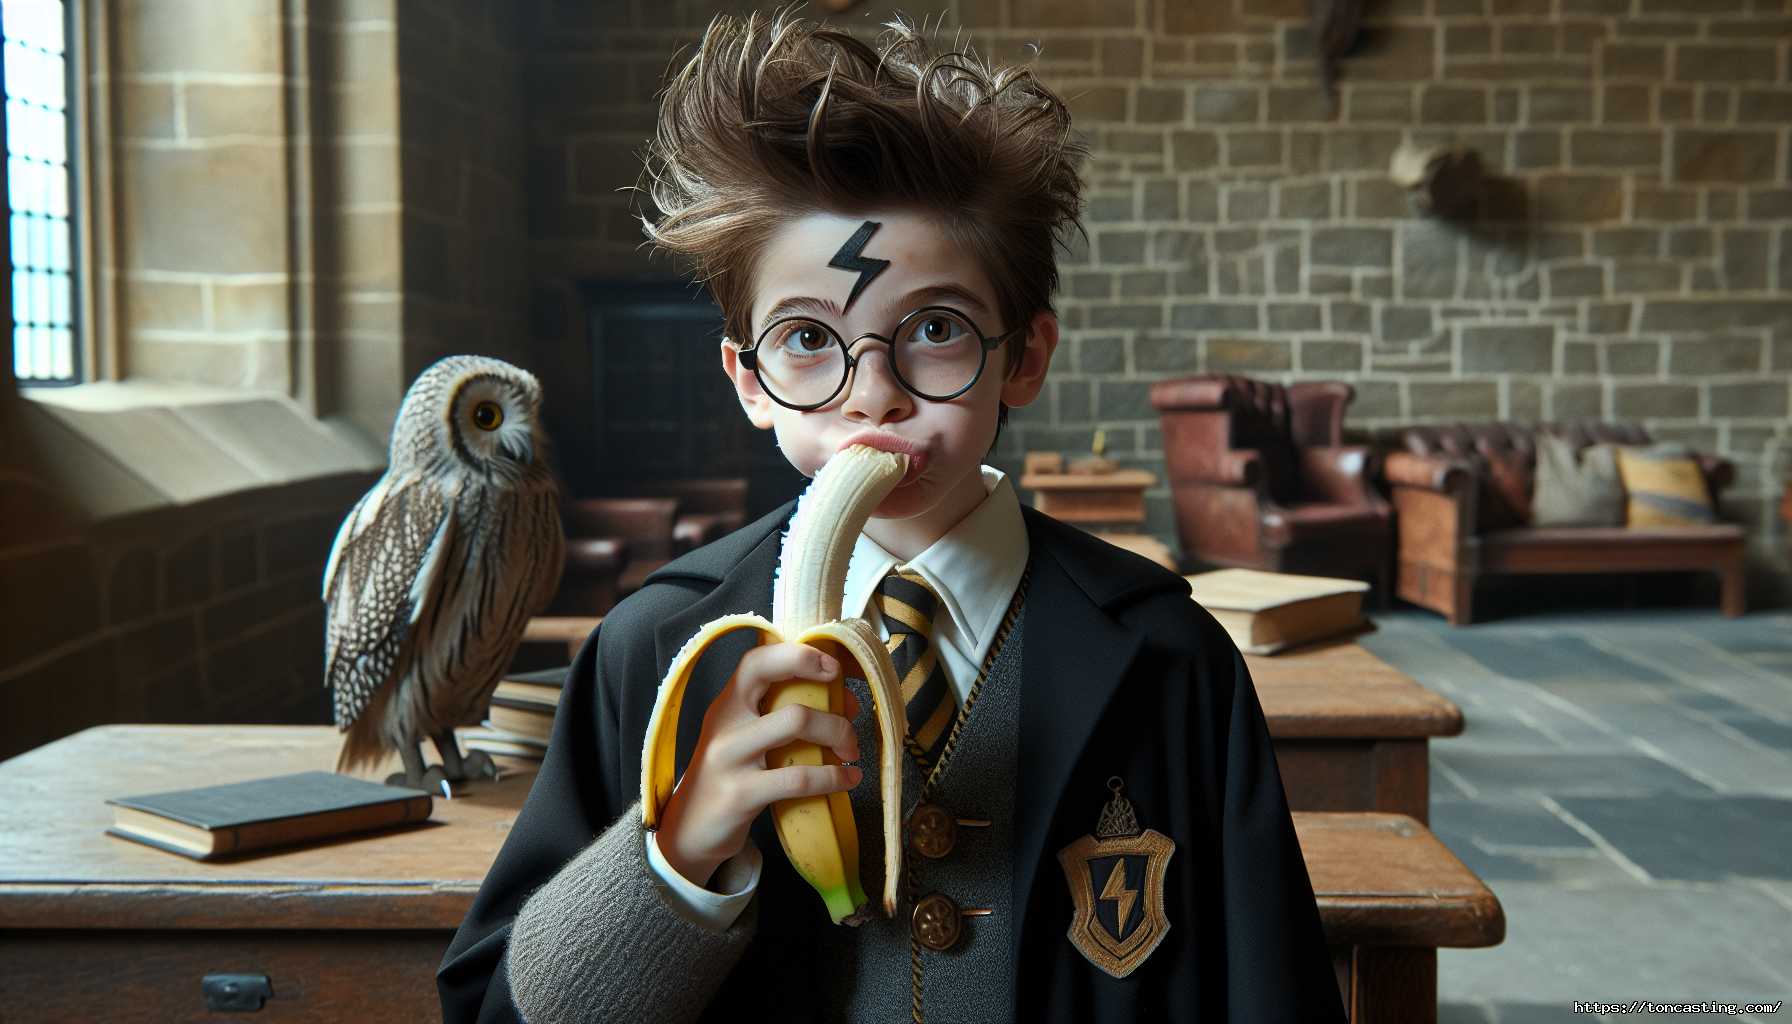 Enfant avec des lunettes, une cicatrice en forme d'éclair, mangeant une banane dans une salle en pierre.